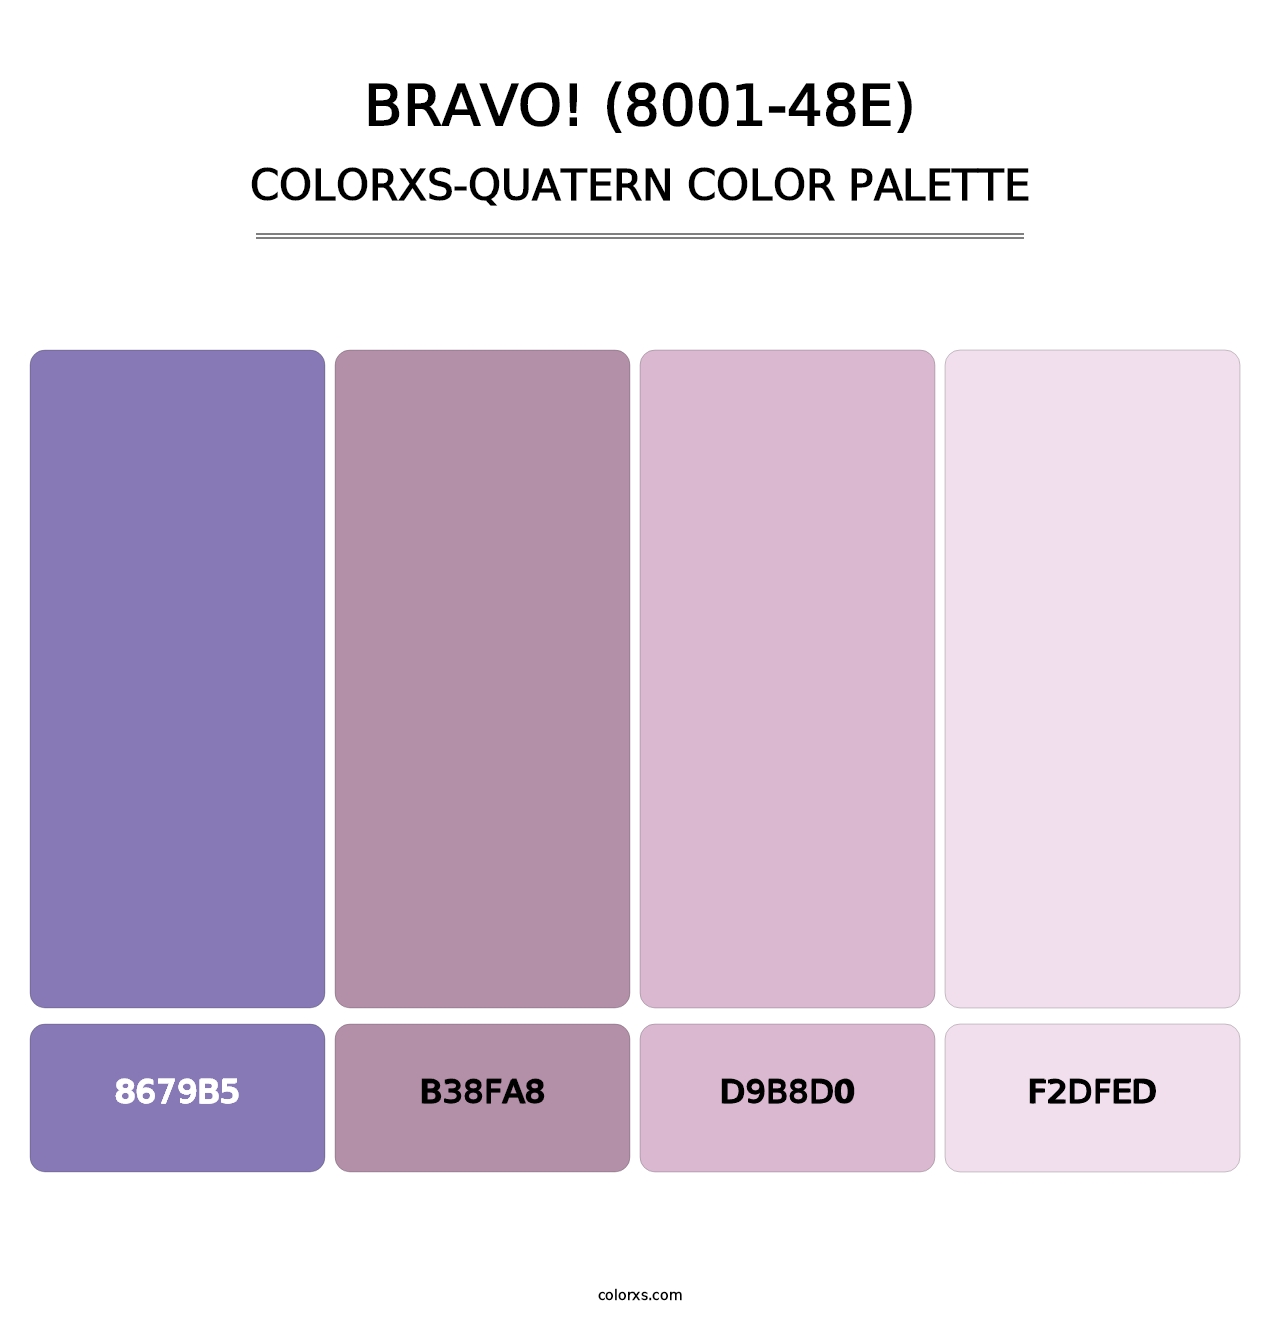 Bravo! (8001-48E) - Colorxs Quatern Palette